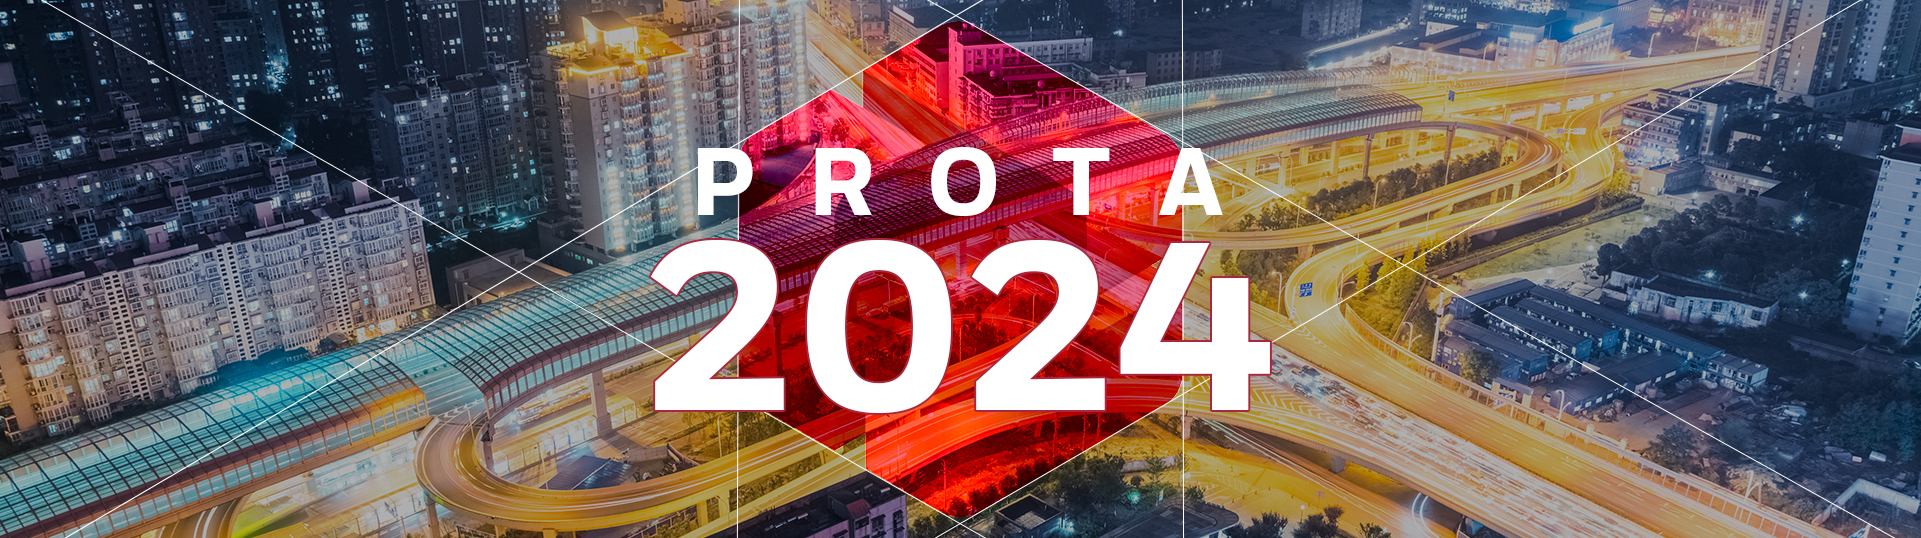 Odkryj rewolucyjne możliwości projektowania z Prota 2024!